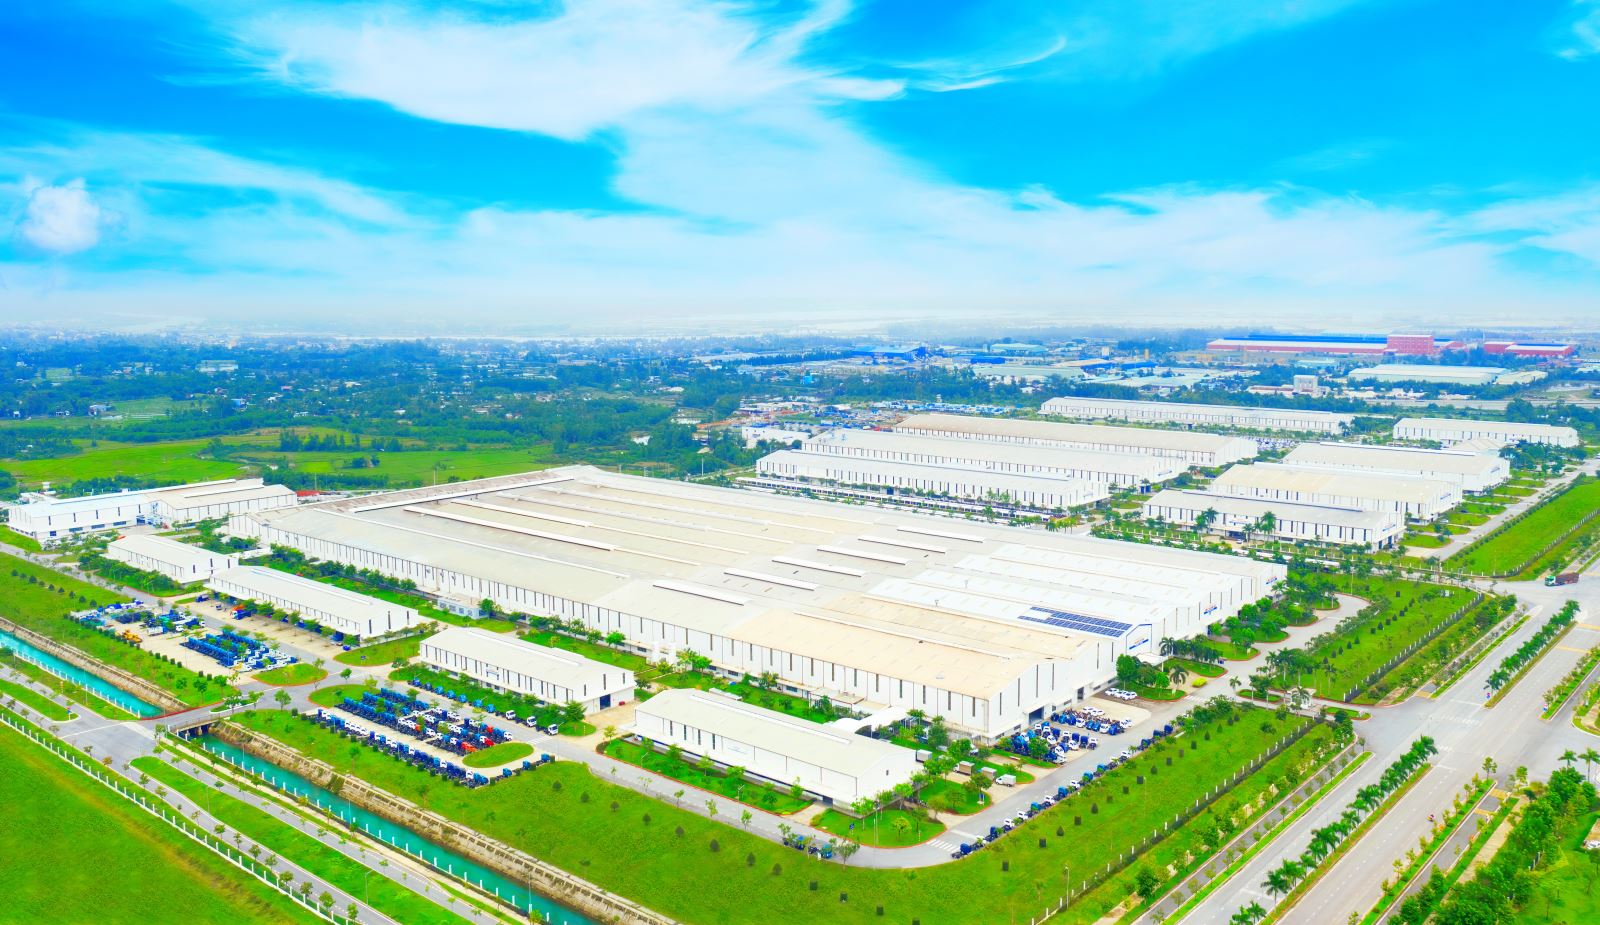 Tỉnh Quảng Nam đề nghị bổ sung quy hoạch quốc gia Trung tâm công nghiệp cơ khí và công nghiệp phụ trợ tại Khu kinh tế Chu Lai.